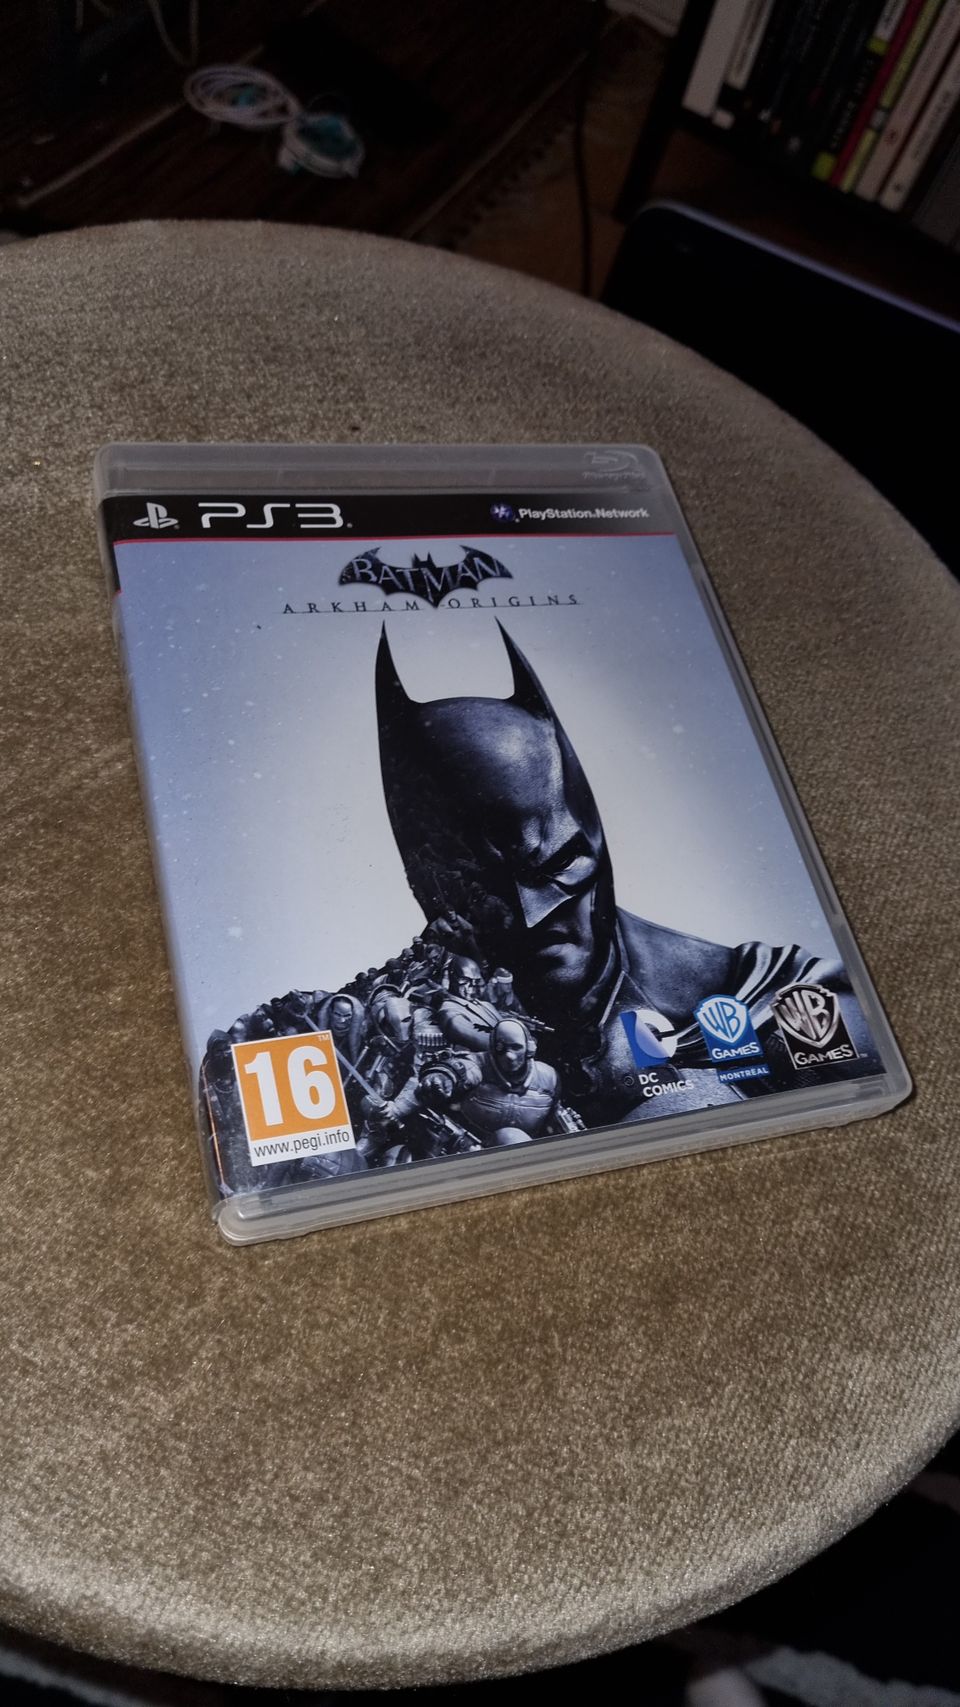 PS3/Playstation 3: Batman Arkham Origins